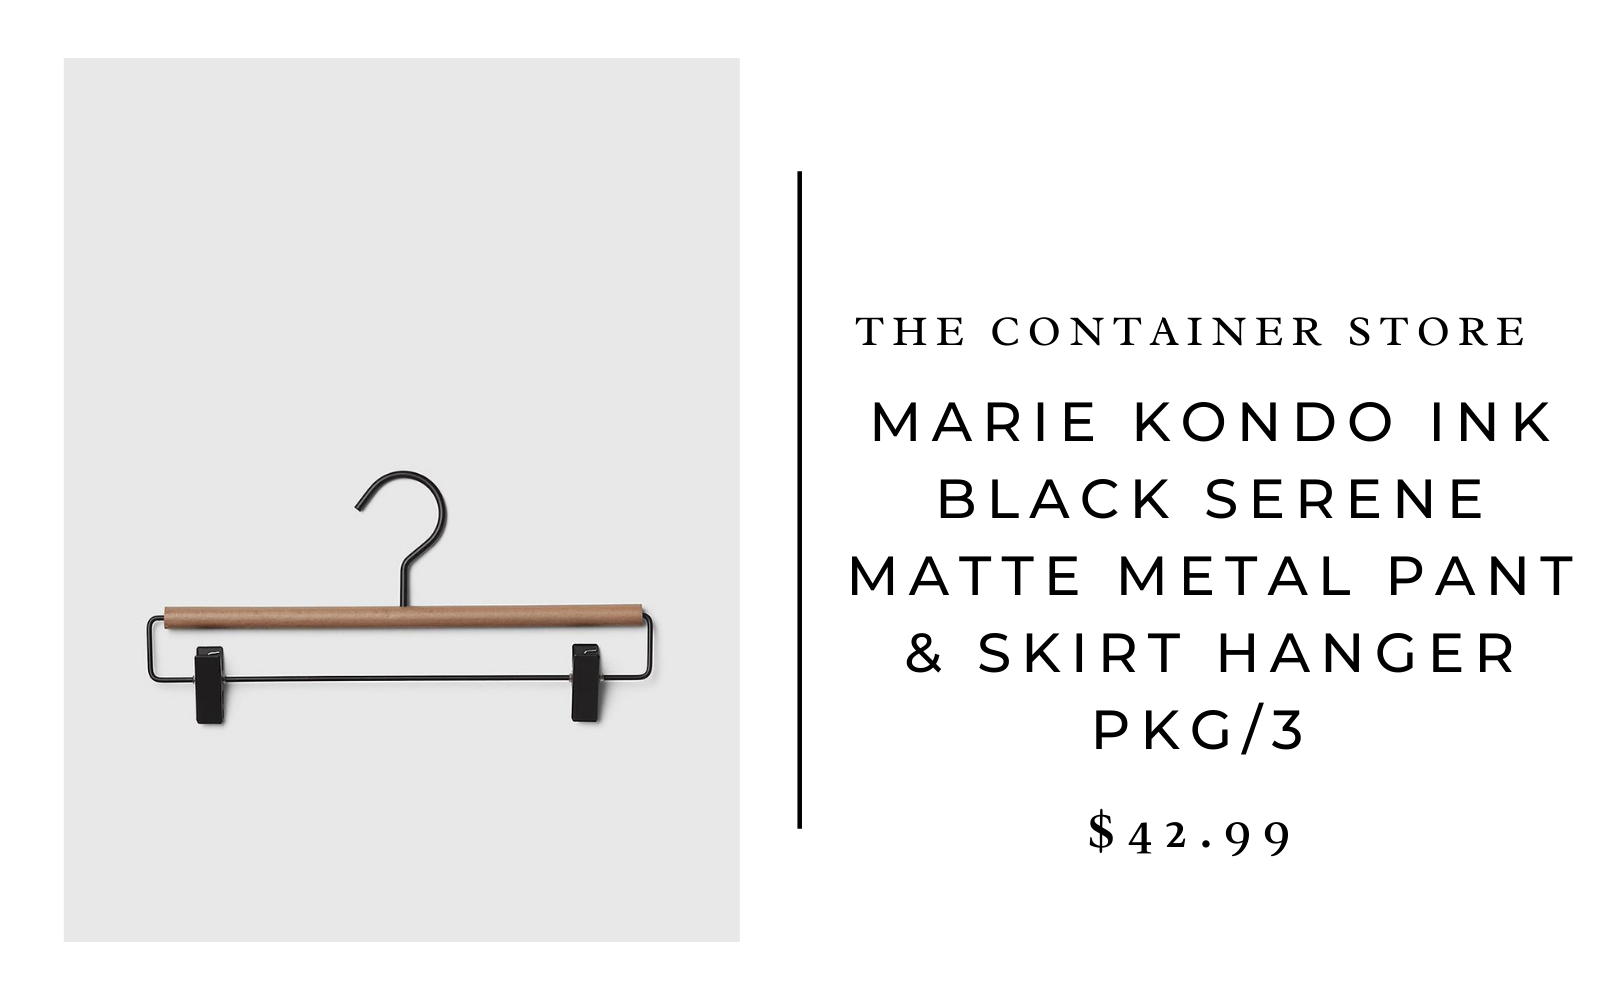 The Container Store Marie Kondo Ink Black Serene Matte Metal Pant & Skirt Hanger Pkg/3